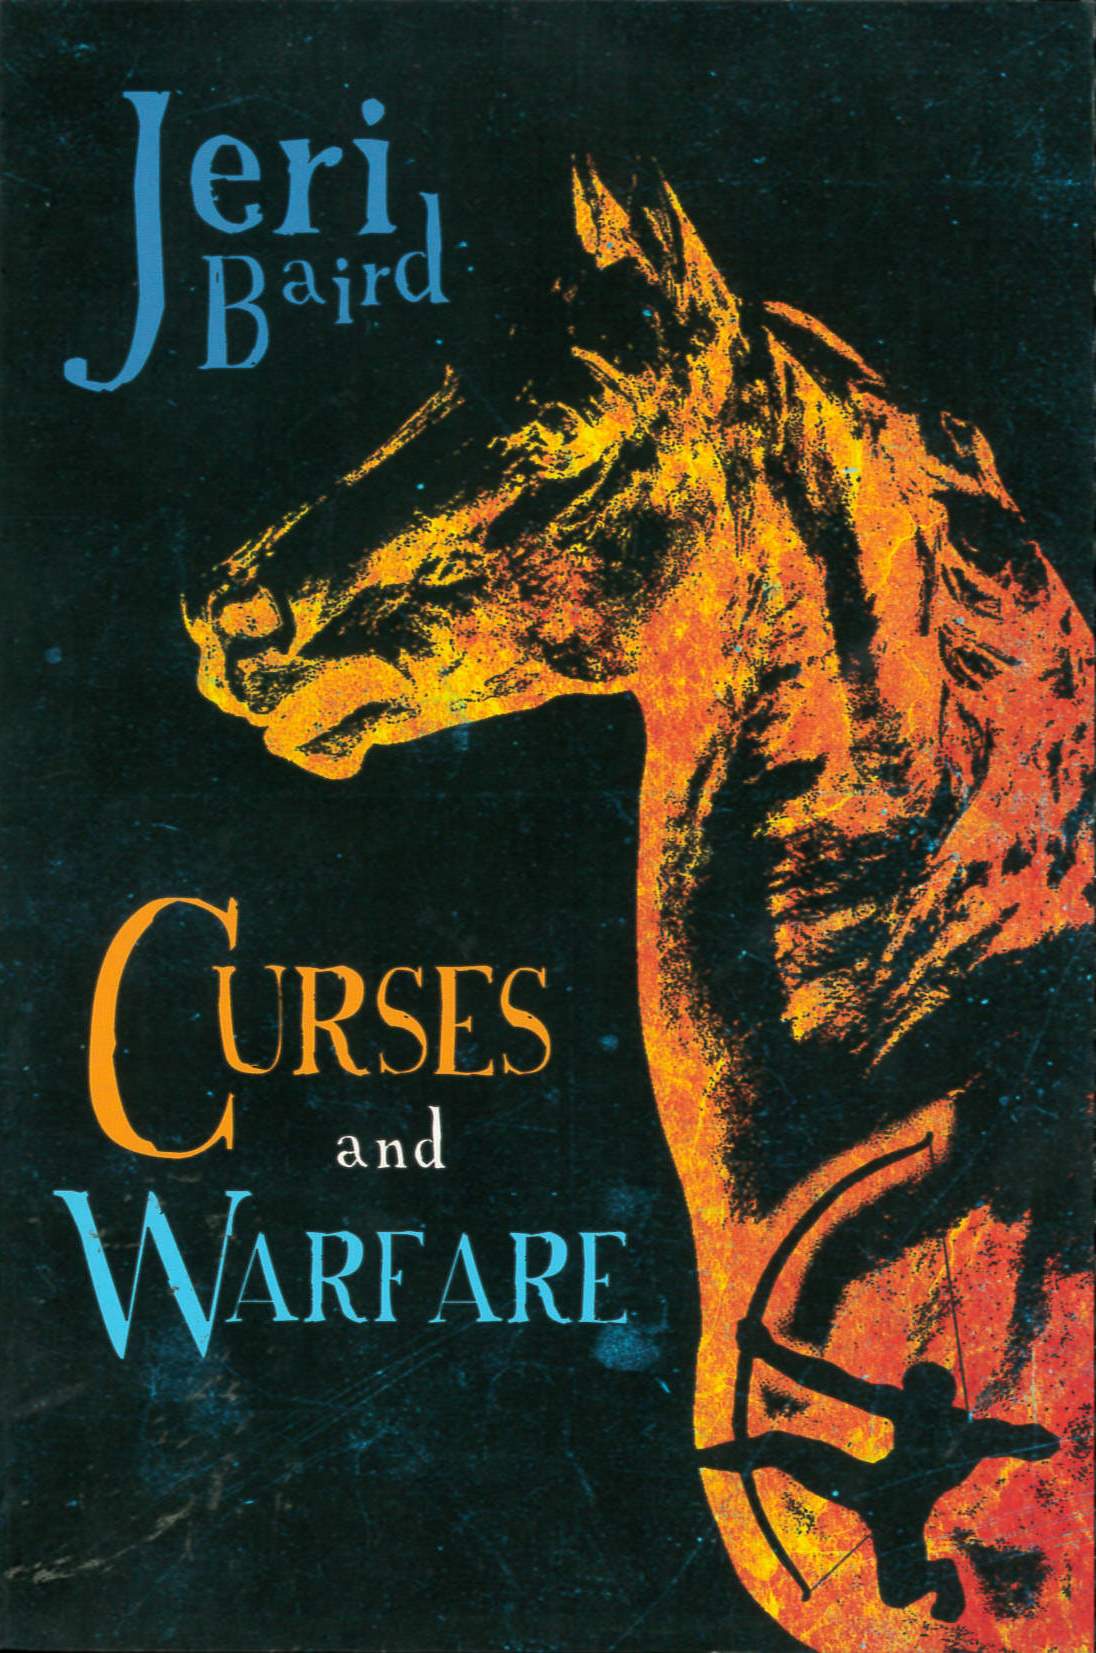 Curses and warfare /